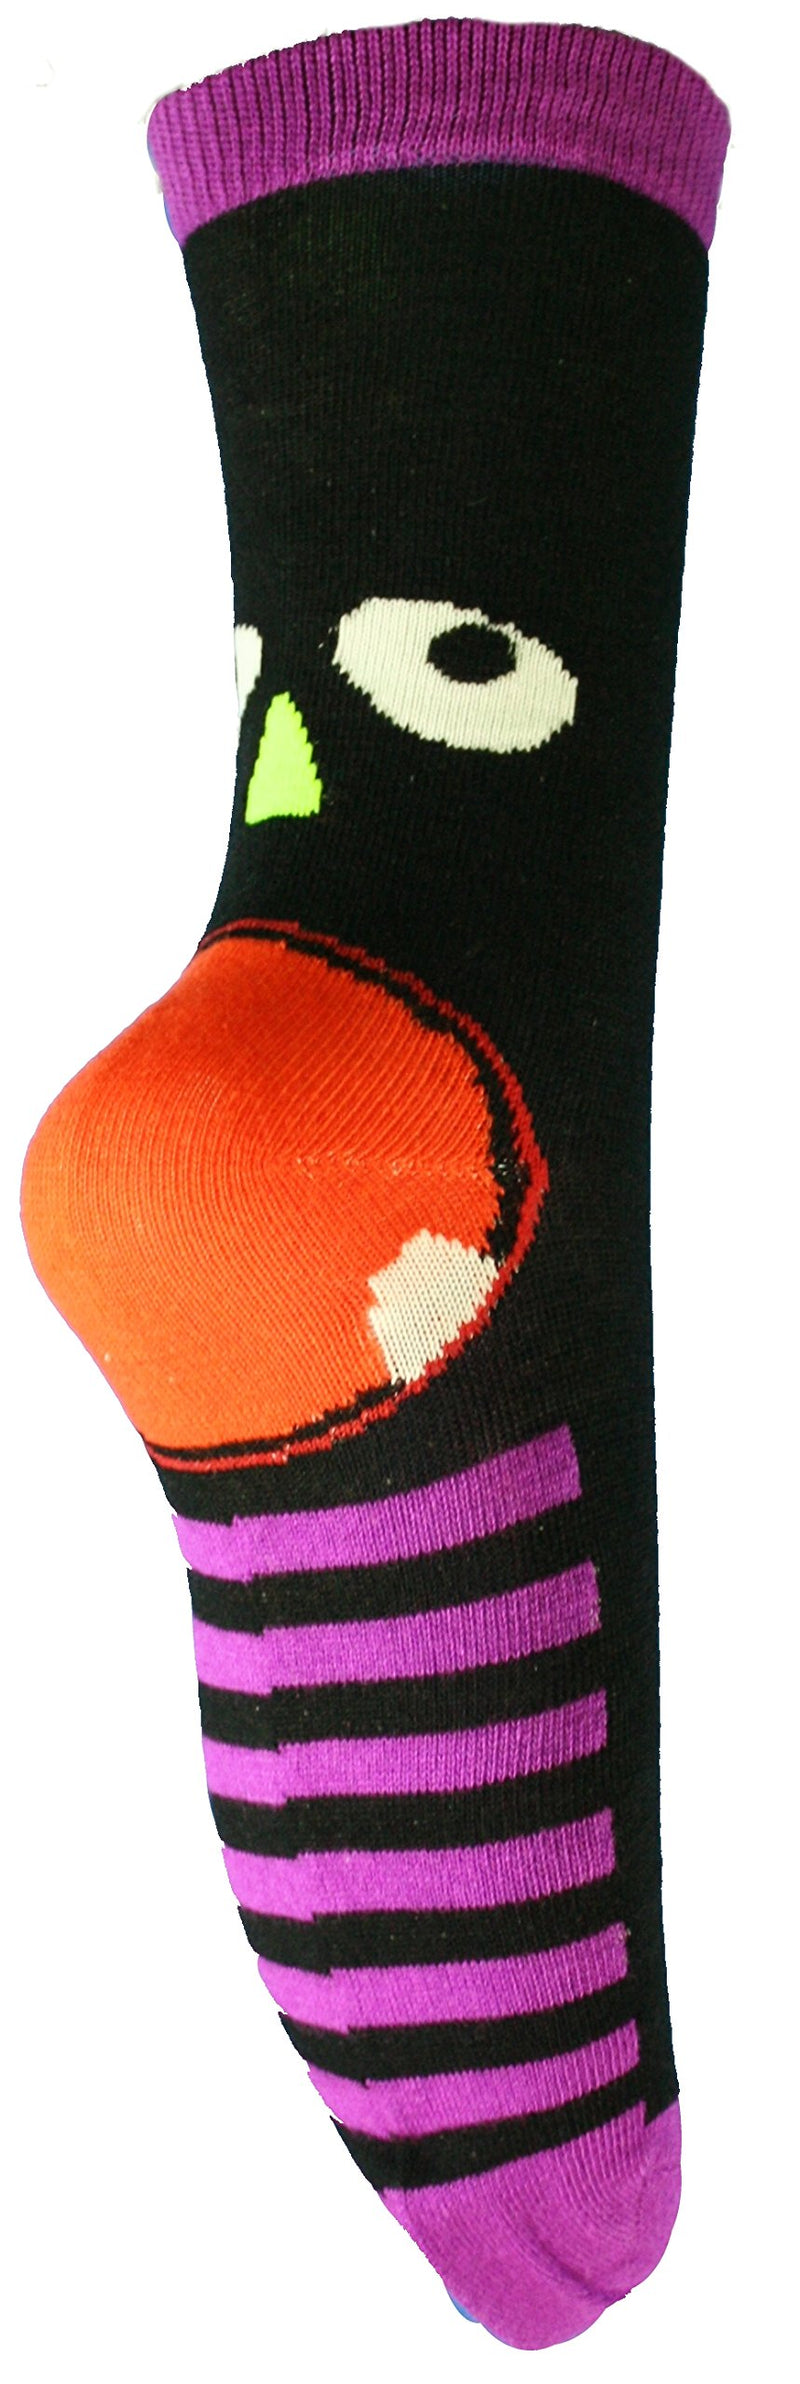 Knit Monster Face Socks - Black